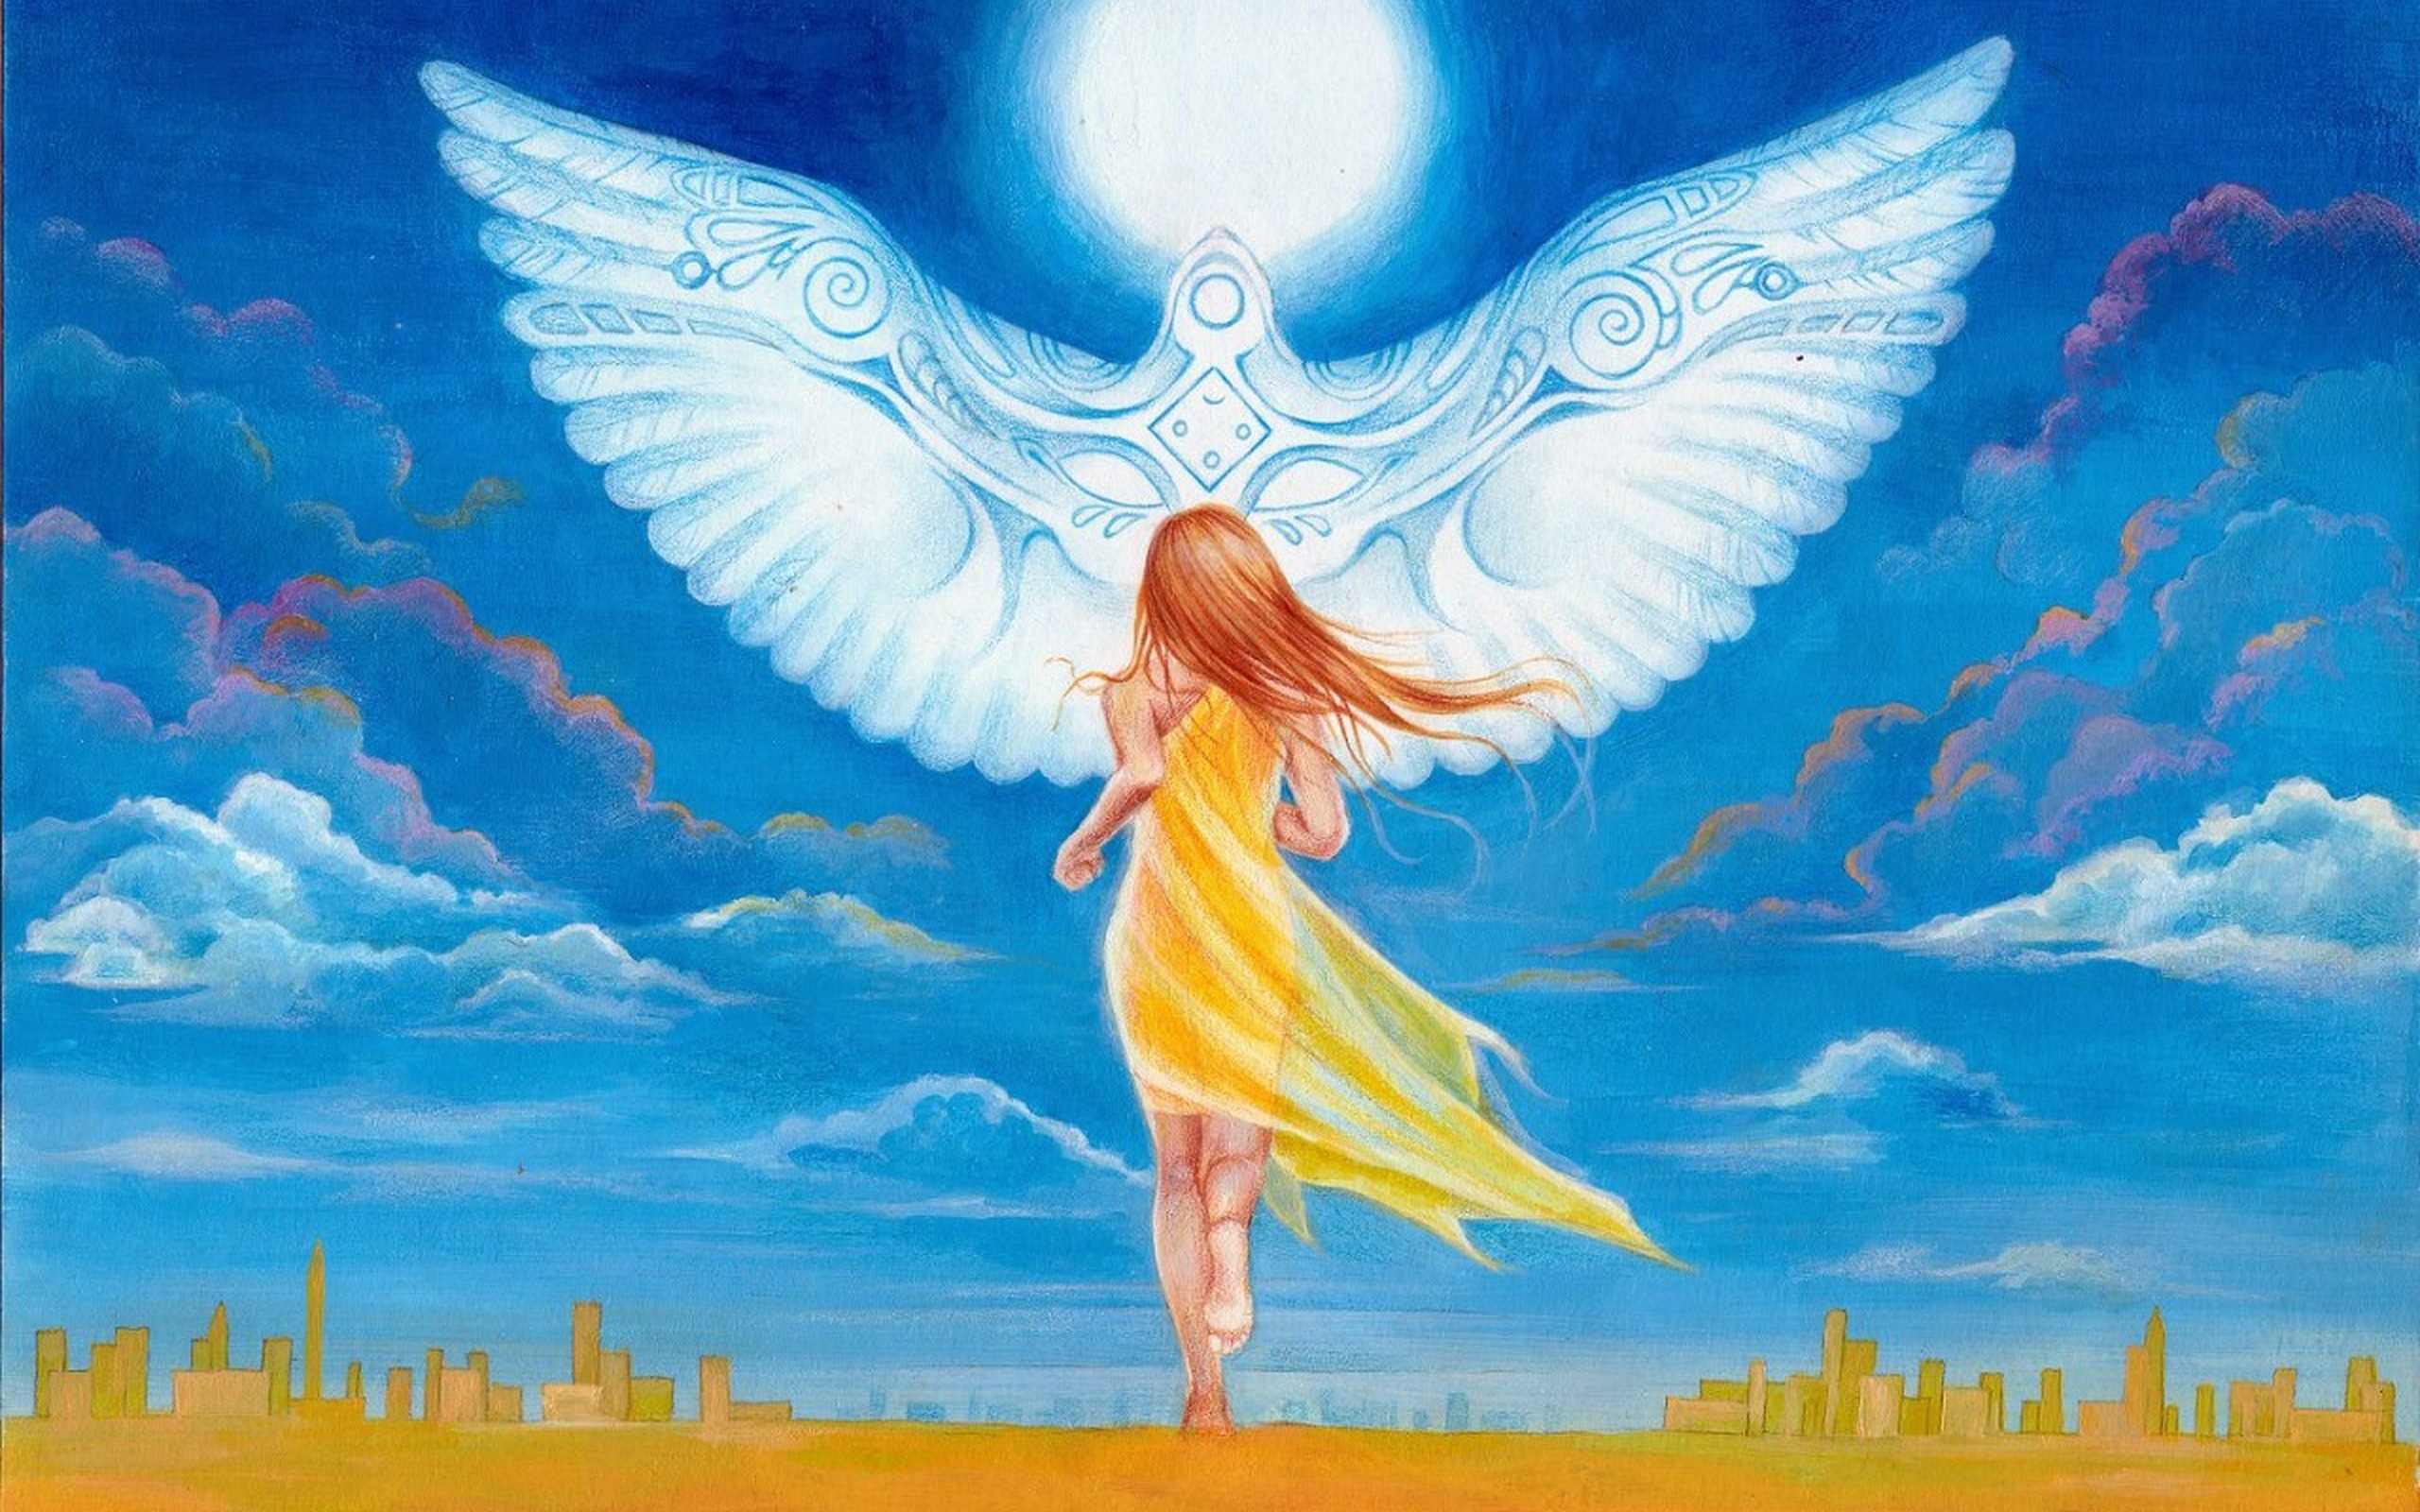 Сюжет два крыла. Ангел. Небесные ангелы. Мир духовный и мир земной. Ангел эзотерика.